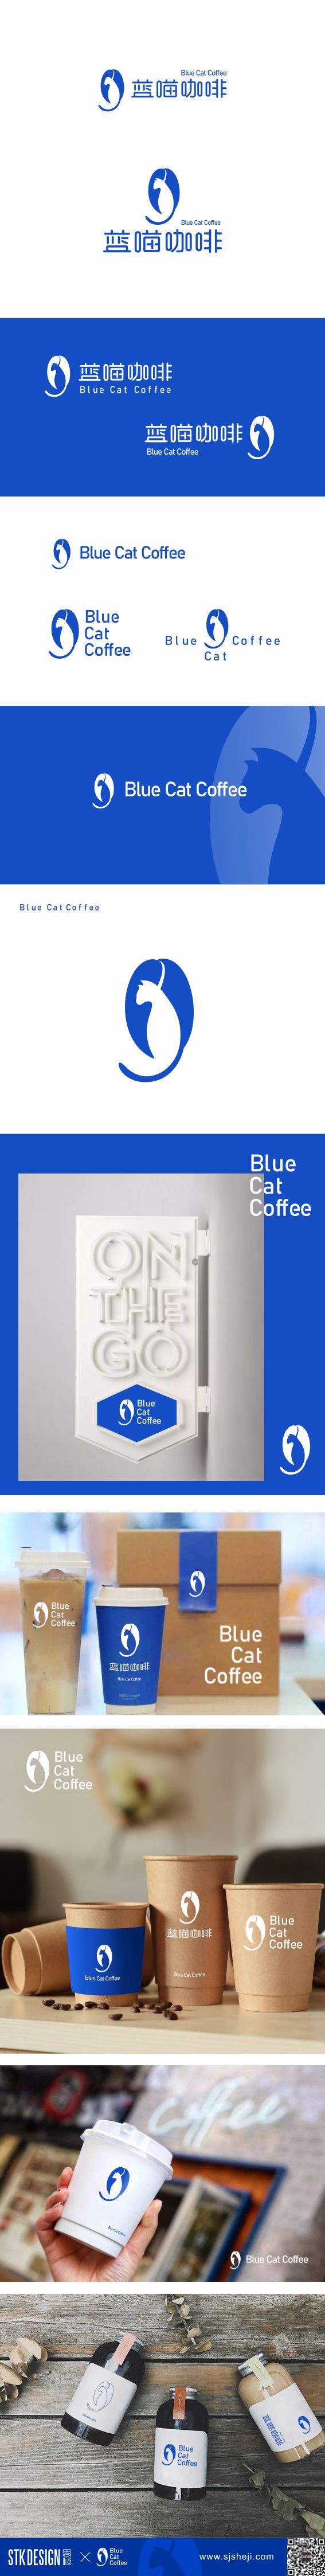 Blue Cat Coffee蓝喵咖啡LOGO设计